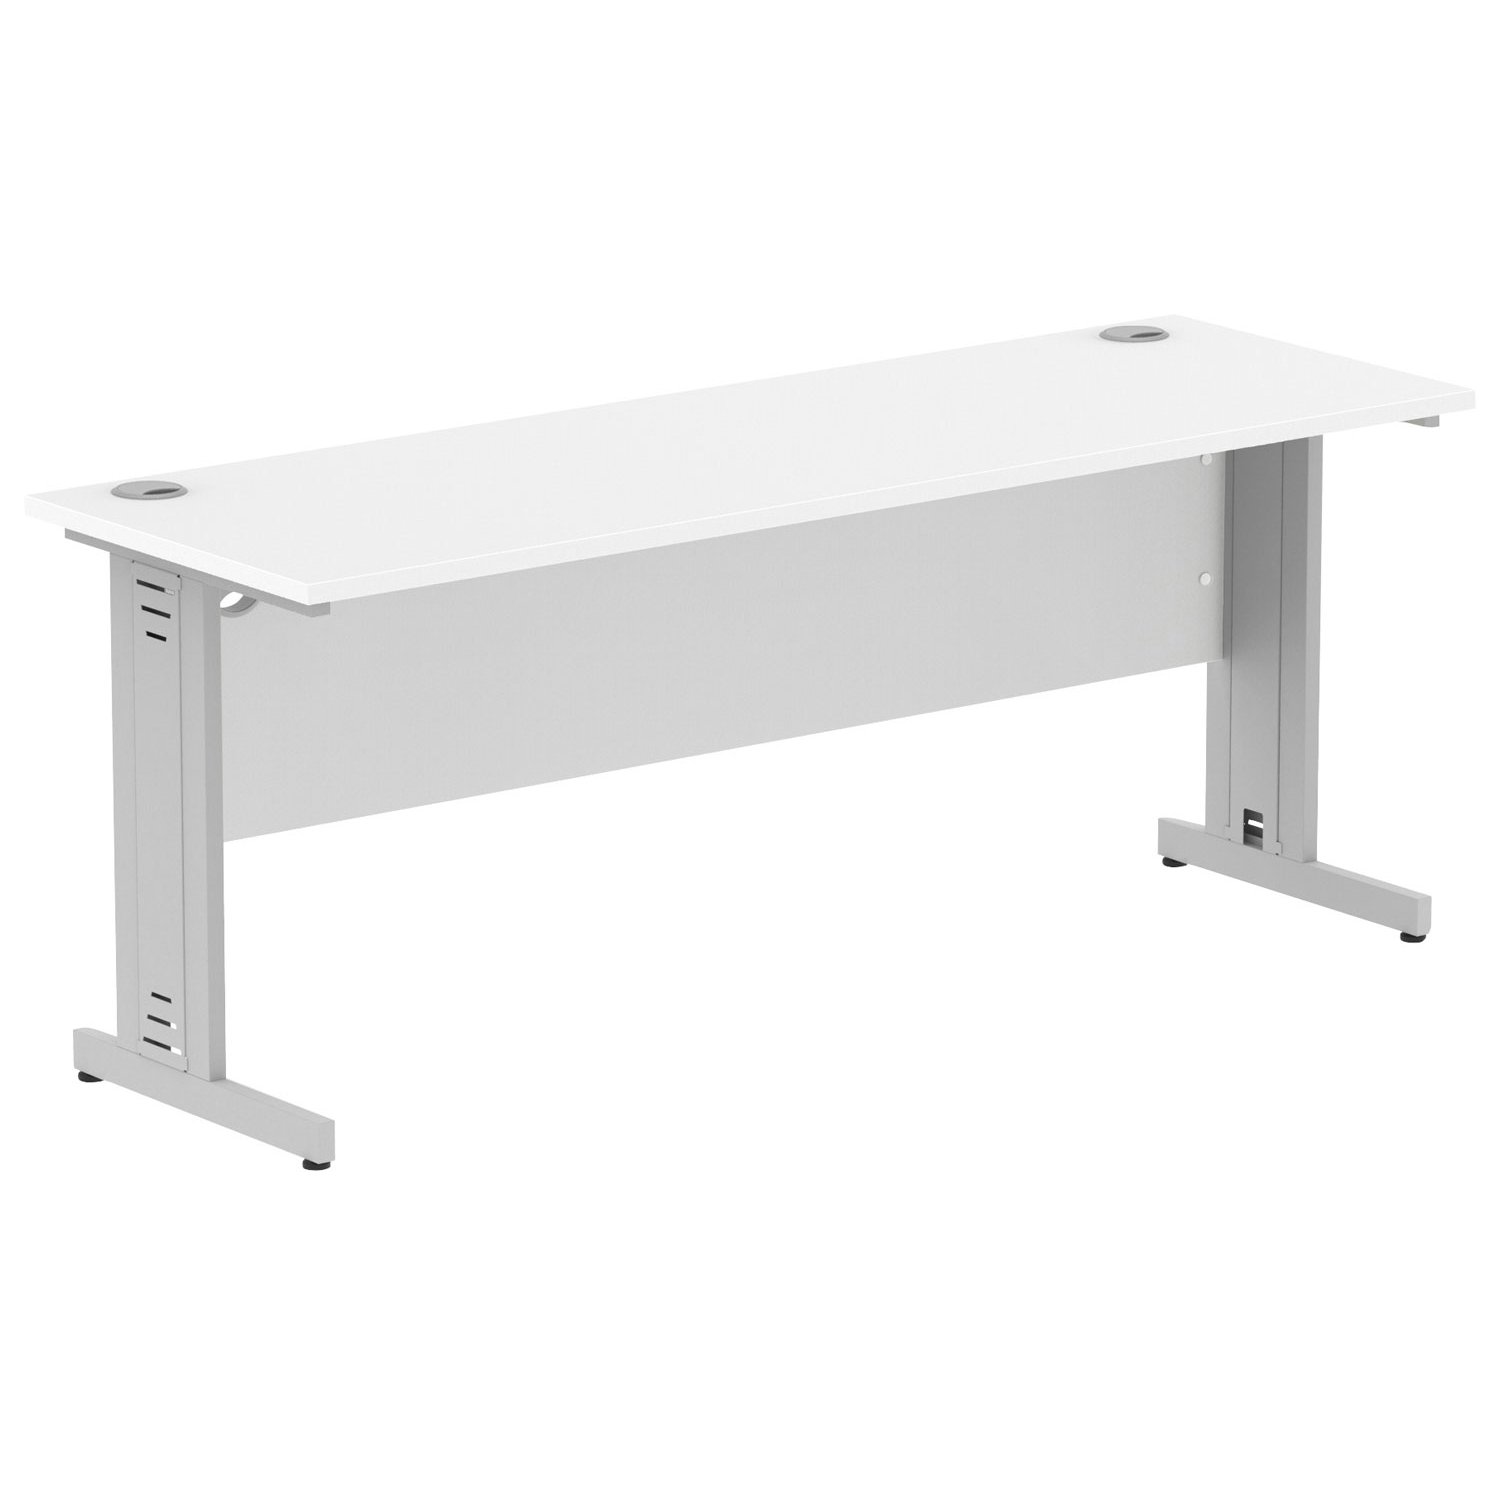 Vitali Deluxe Narrow Rectangular Desk (Silver Legs), 180wx60dx73h (cm), White